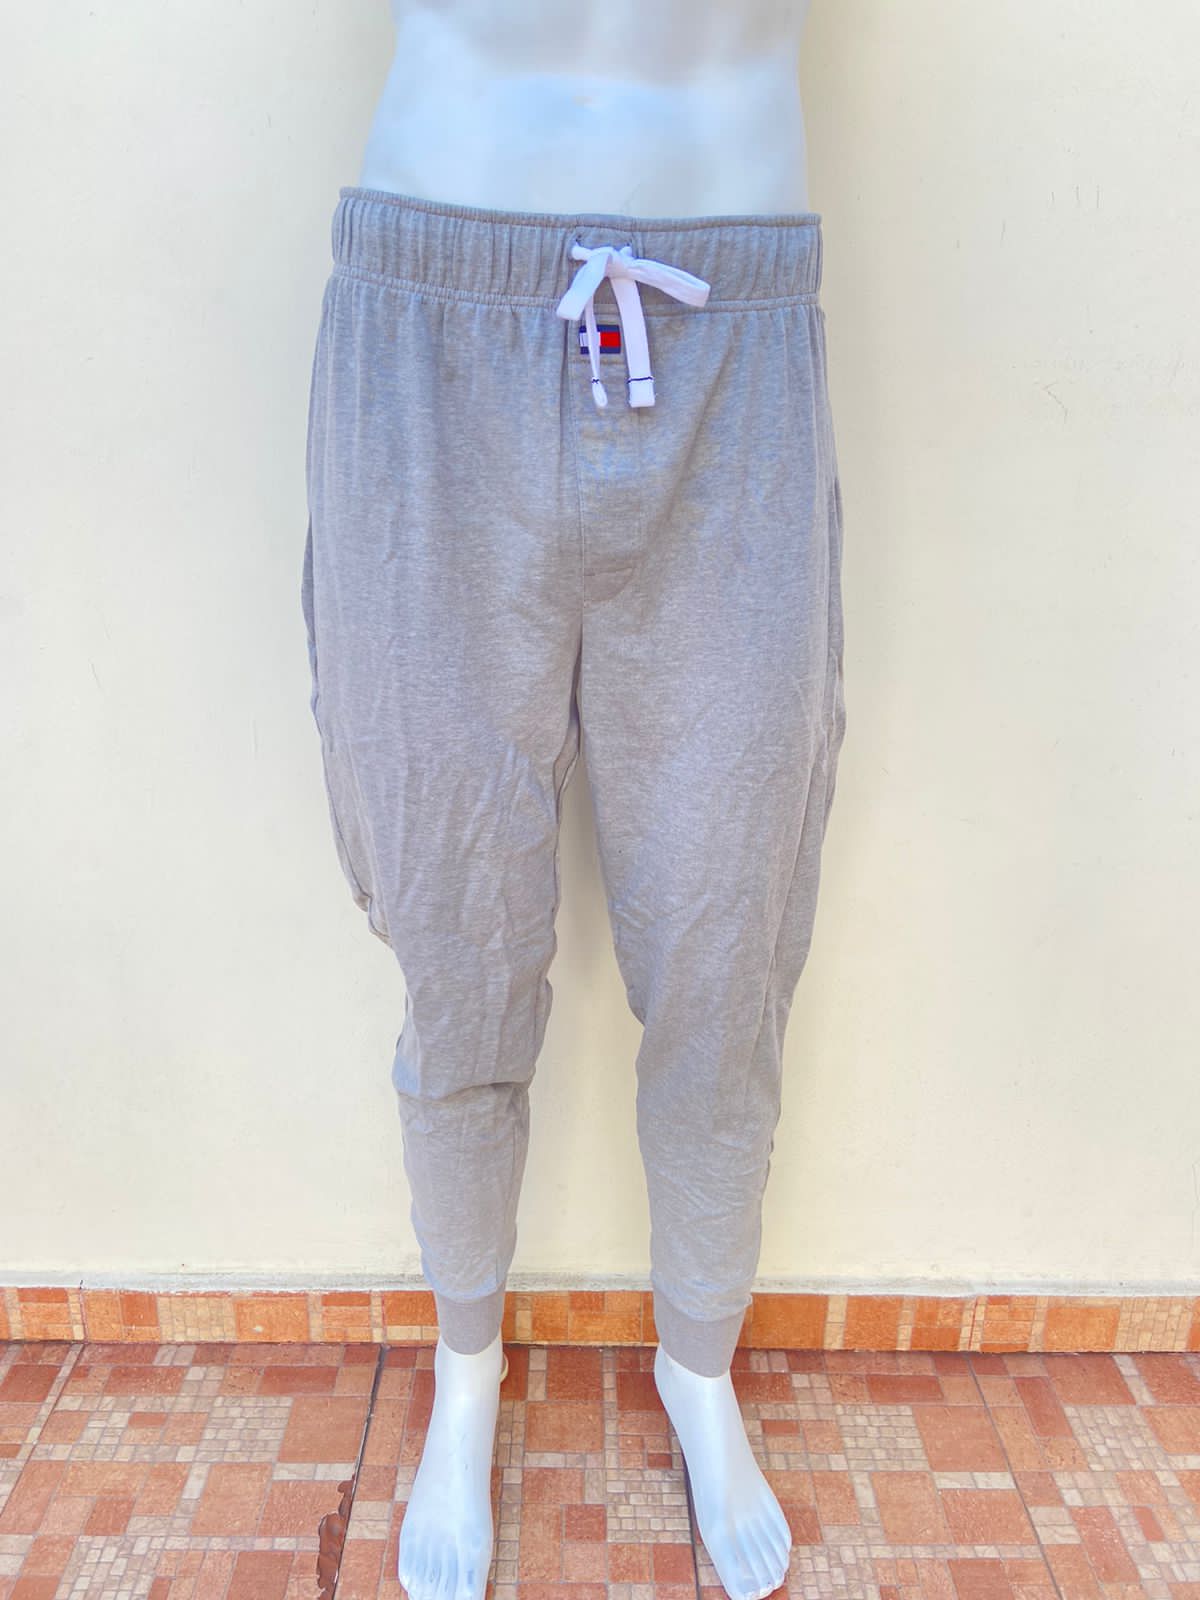 Pantalón/ Jogger Tommy Hilfiger original, gris claro con lazo ajustable en el centro de color blanco.